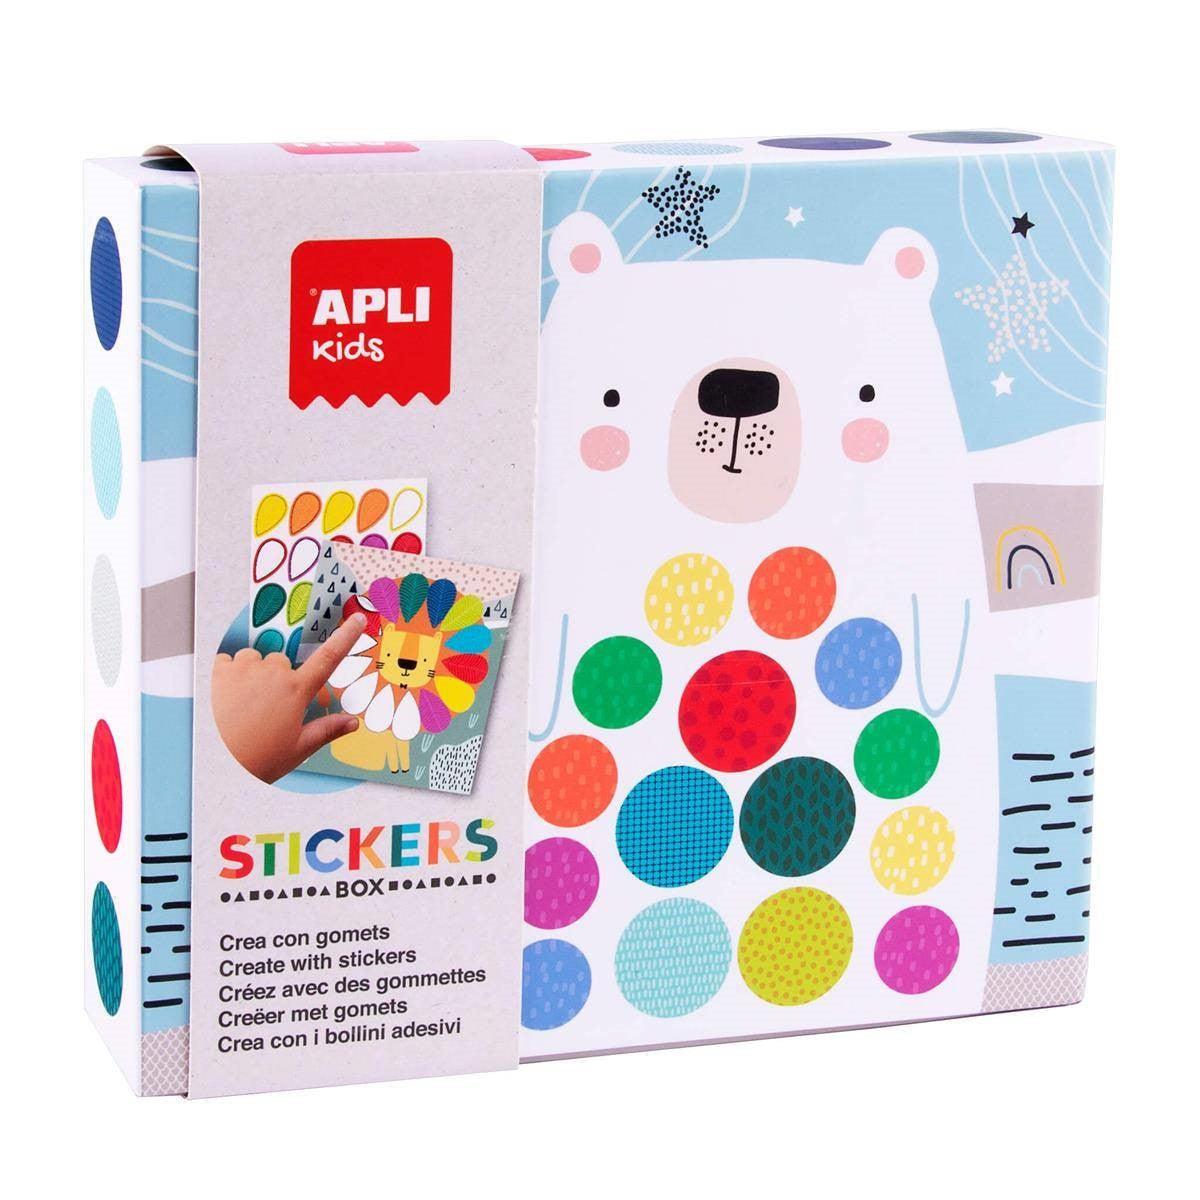 APLI KIDS: Set with Stickers Box stickers